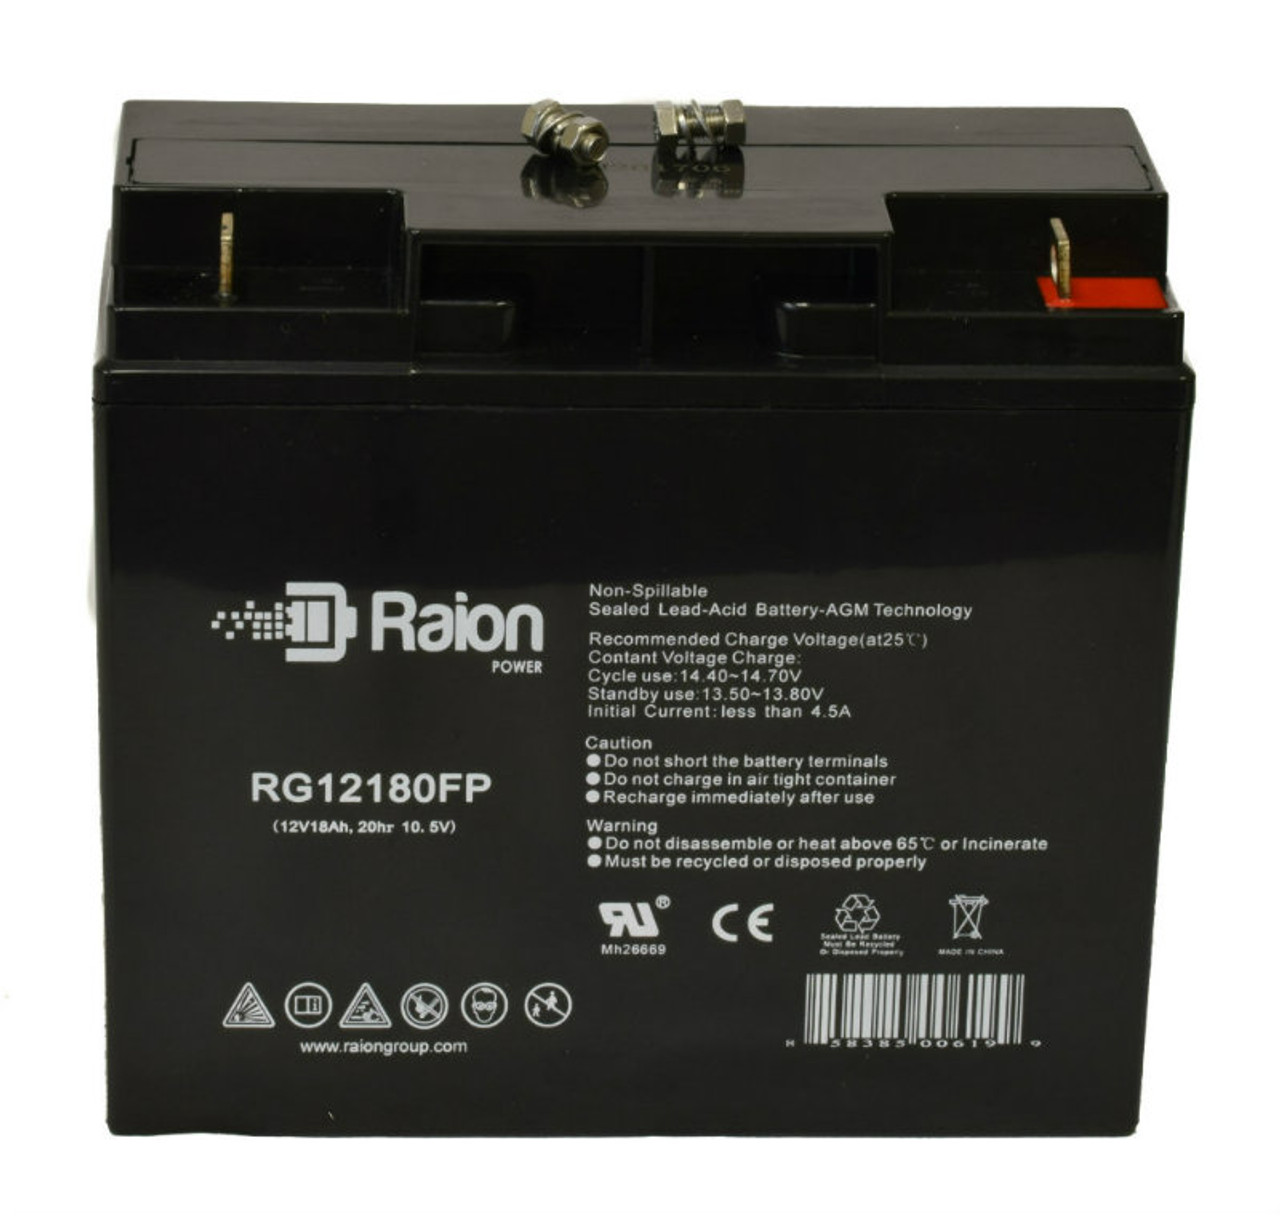 Raion Power RG12180FP 12V 18Ah Lead Acid Battery for Volt Canada Shadow